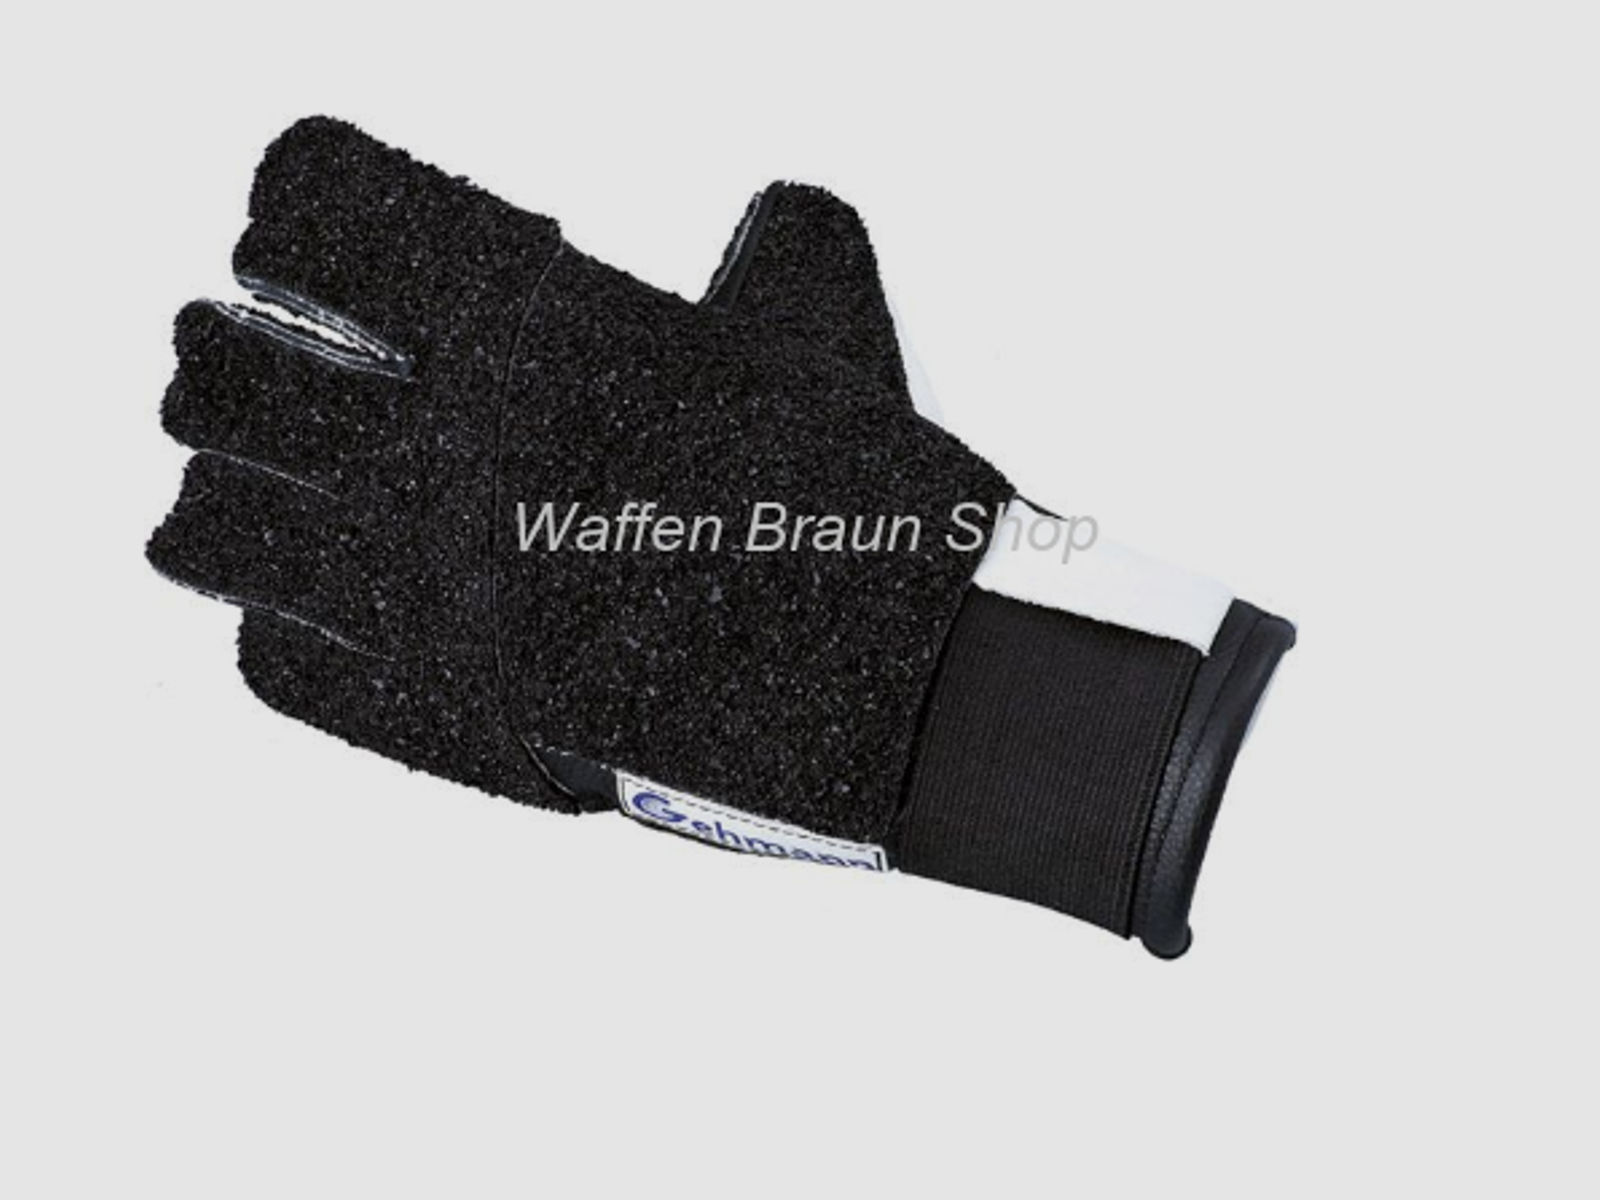 Gehmann 5-Finger-Schießhandschuh Modell STAR Gr. M für die Linke Hand